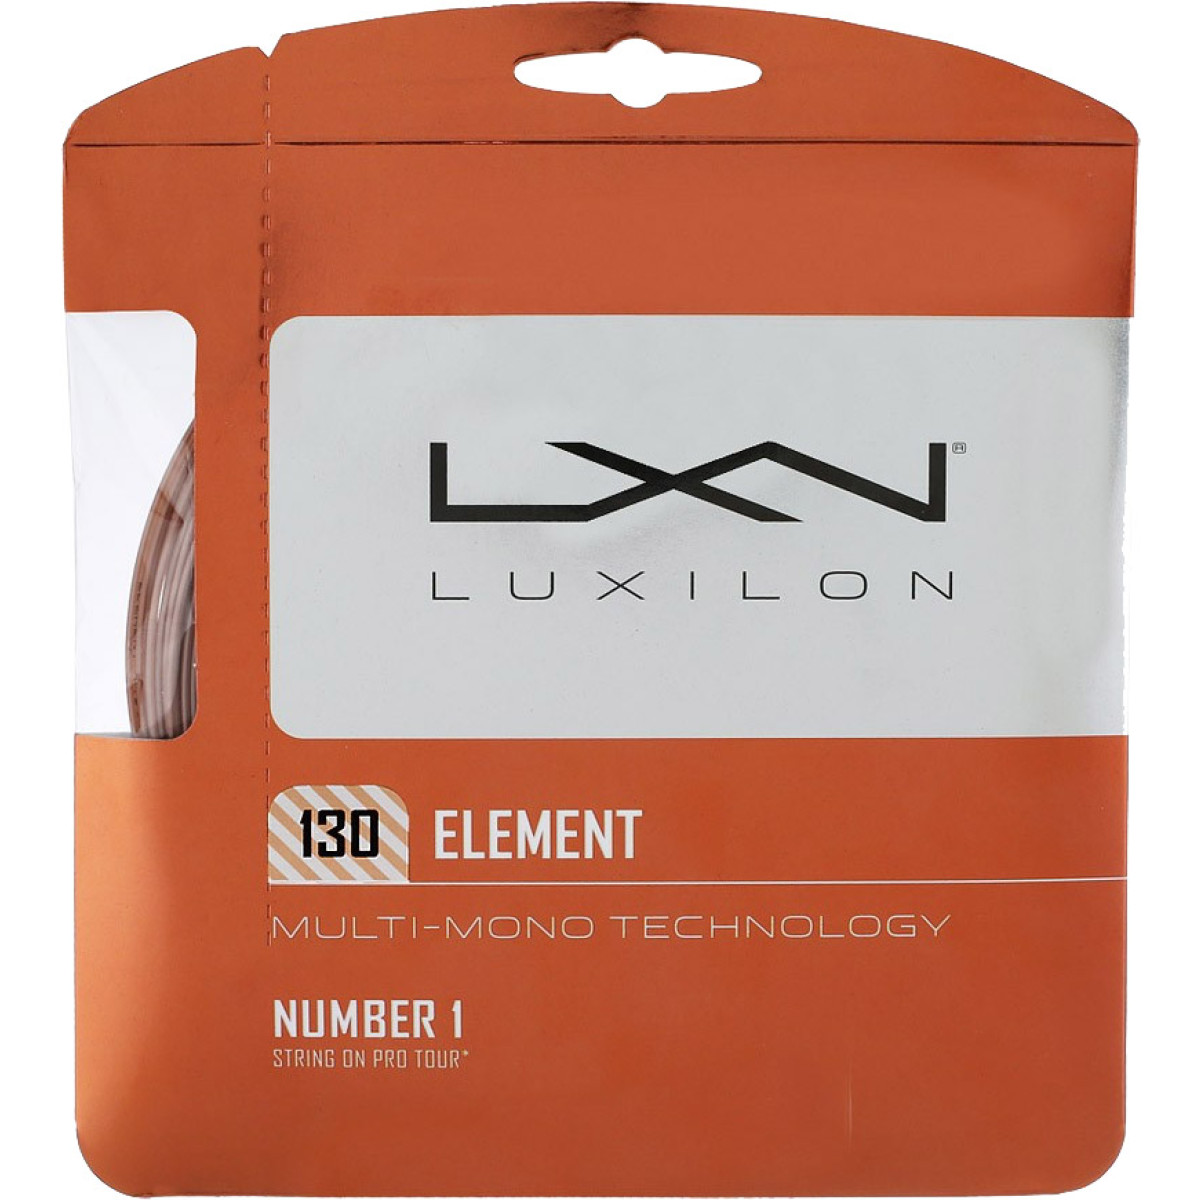 Cordage Luxilon Element (12 Mètres)